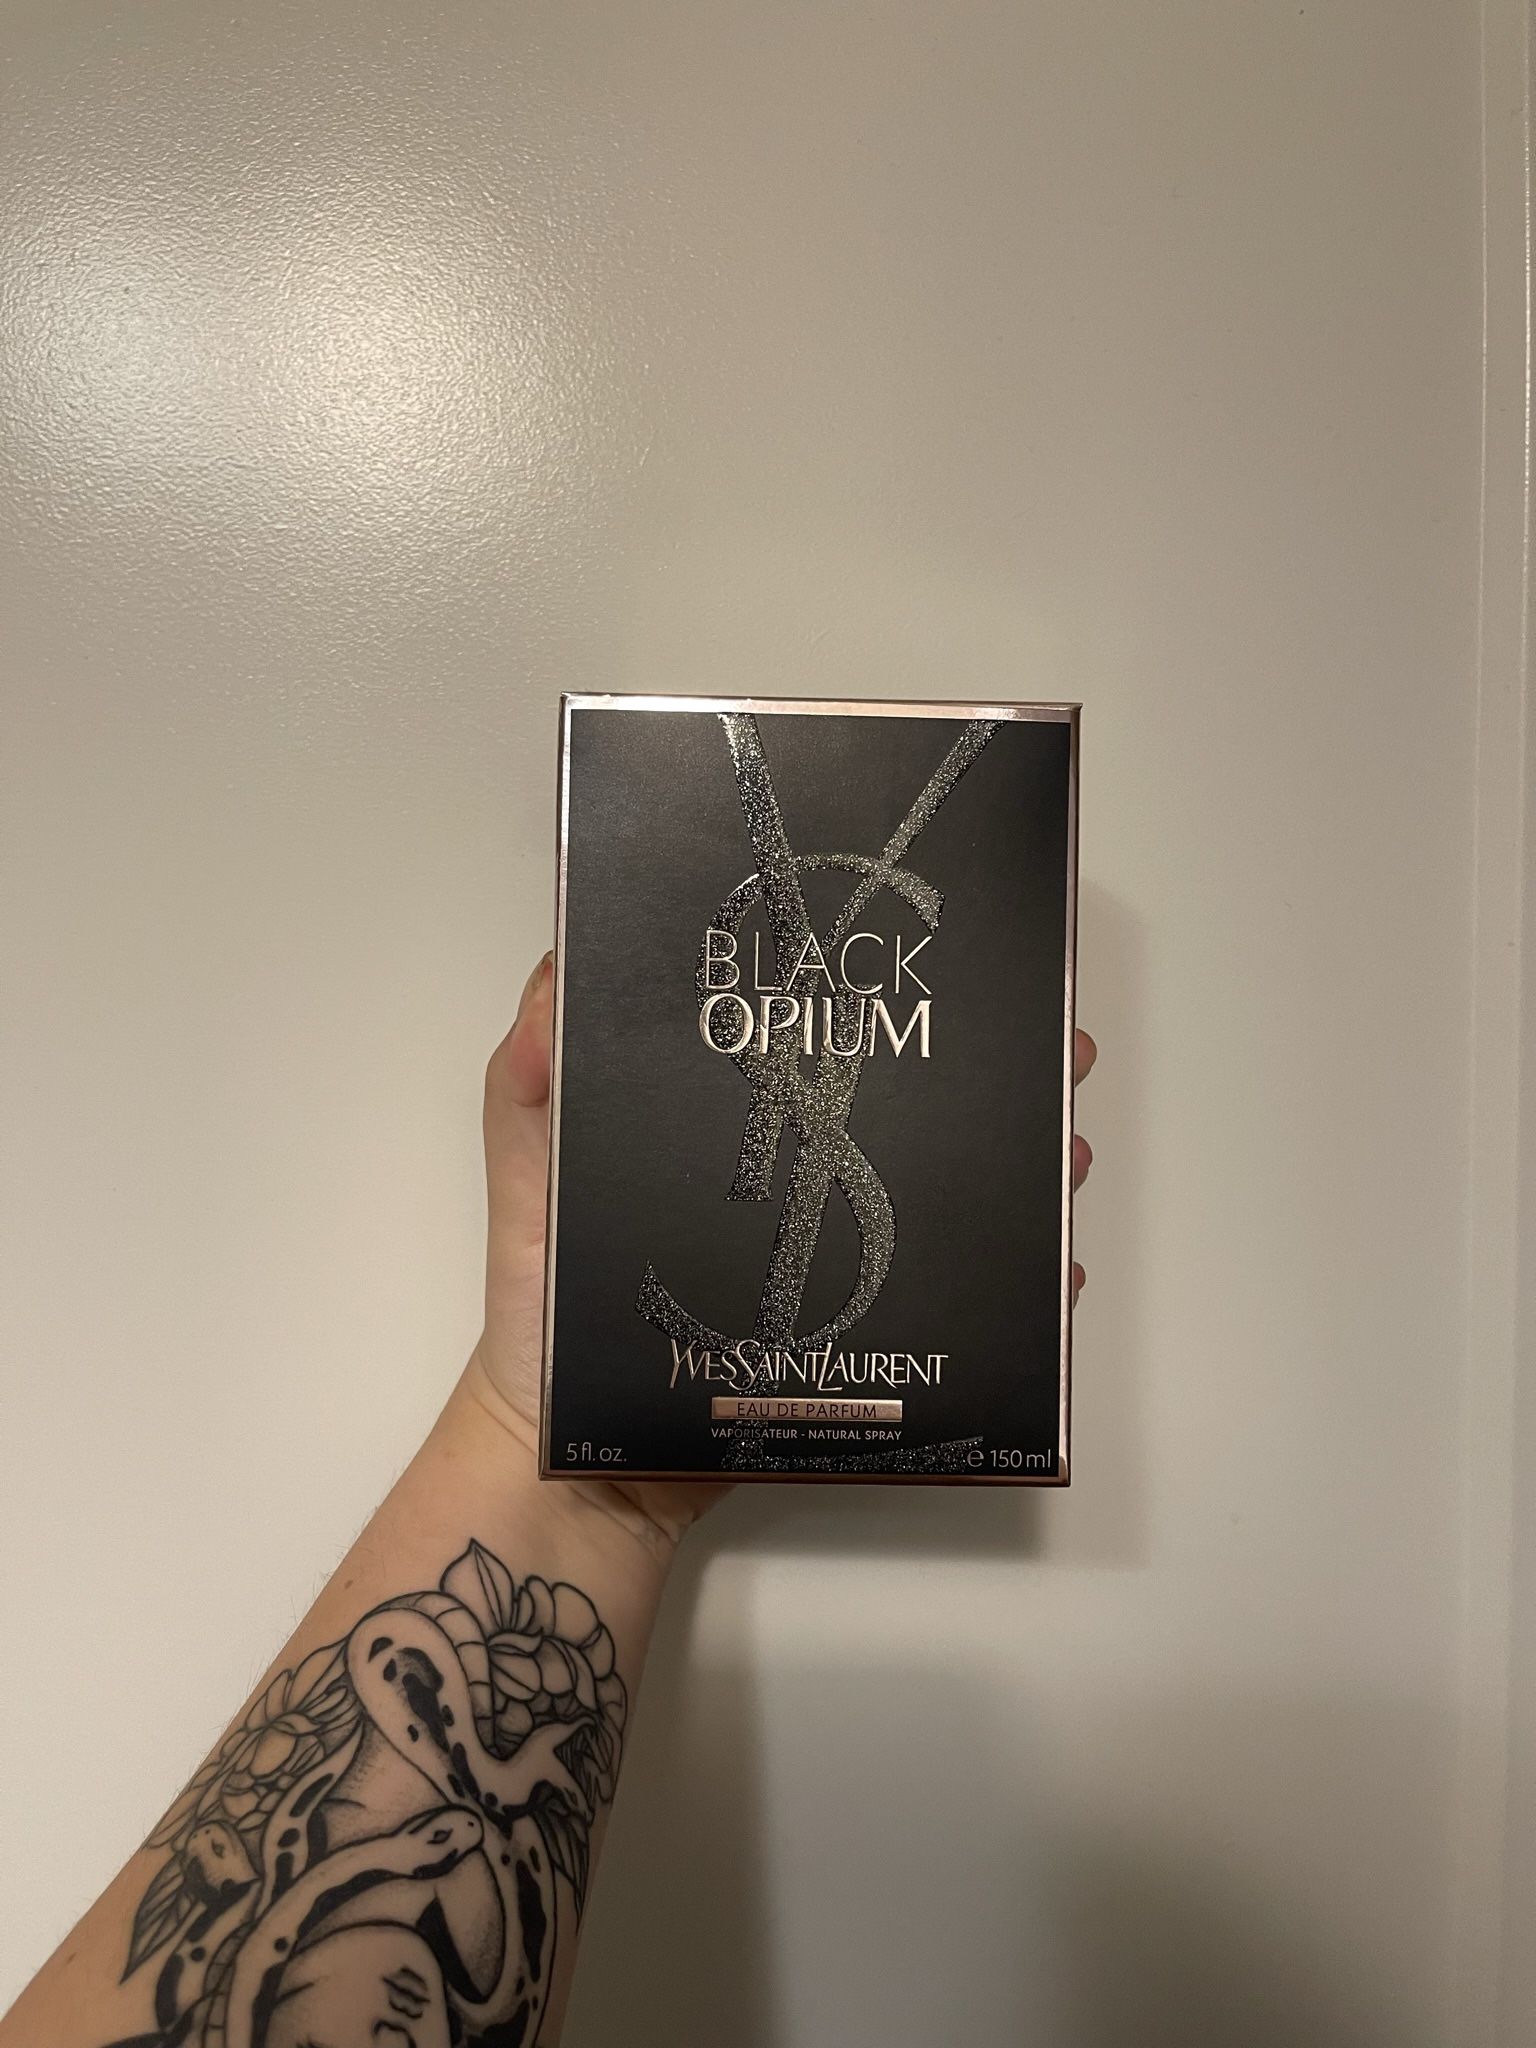 Brand New Ysl Black Opium Perfume